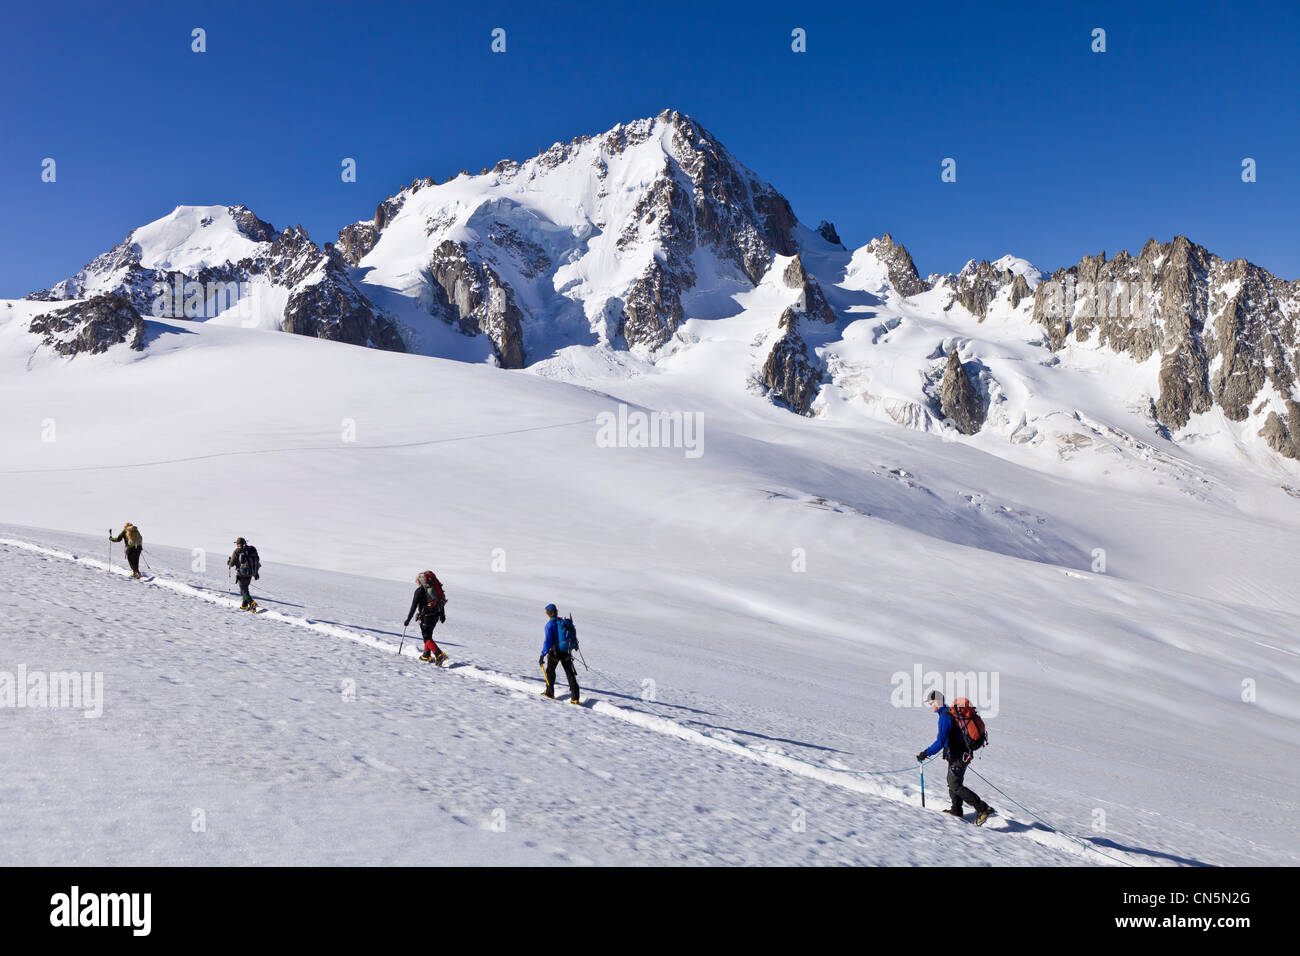 Francia, Haute Savoie, Chamonix Mont Blanc, ride glaciale sul ghiacciaio du Tour con una vista dell'Aiguille du Chardonnet (3824m) Foto Stock